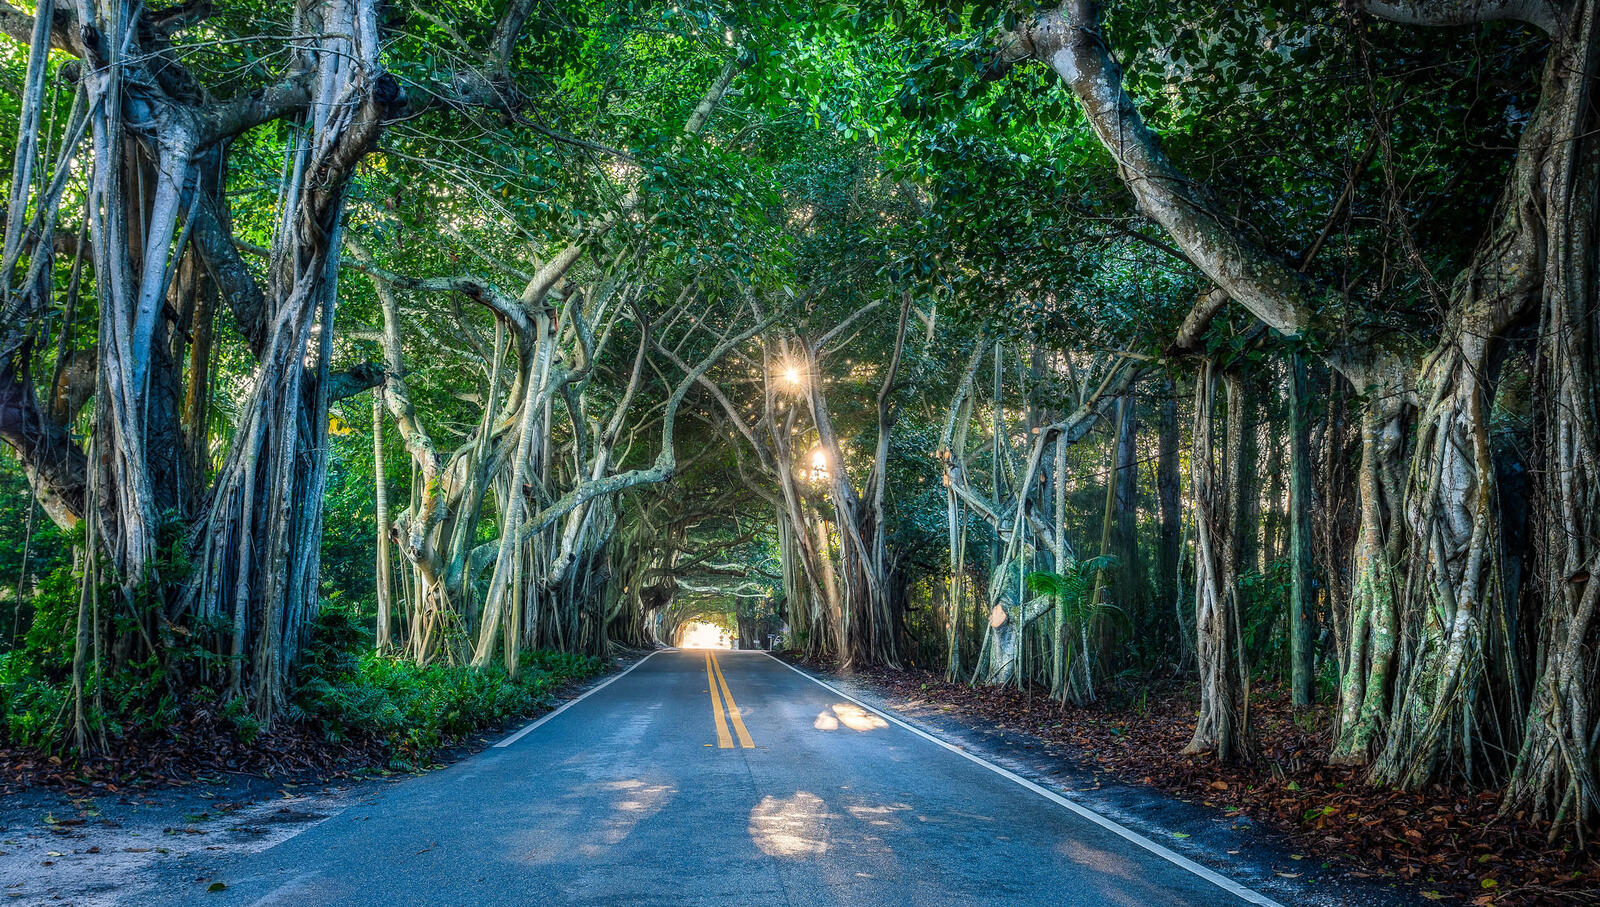 Обои Флорида Тоннель деревьев дорога на рабочий стол